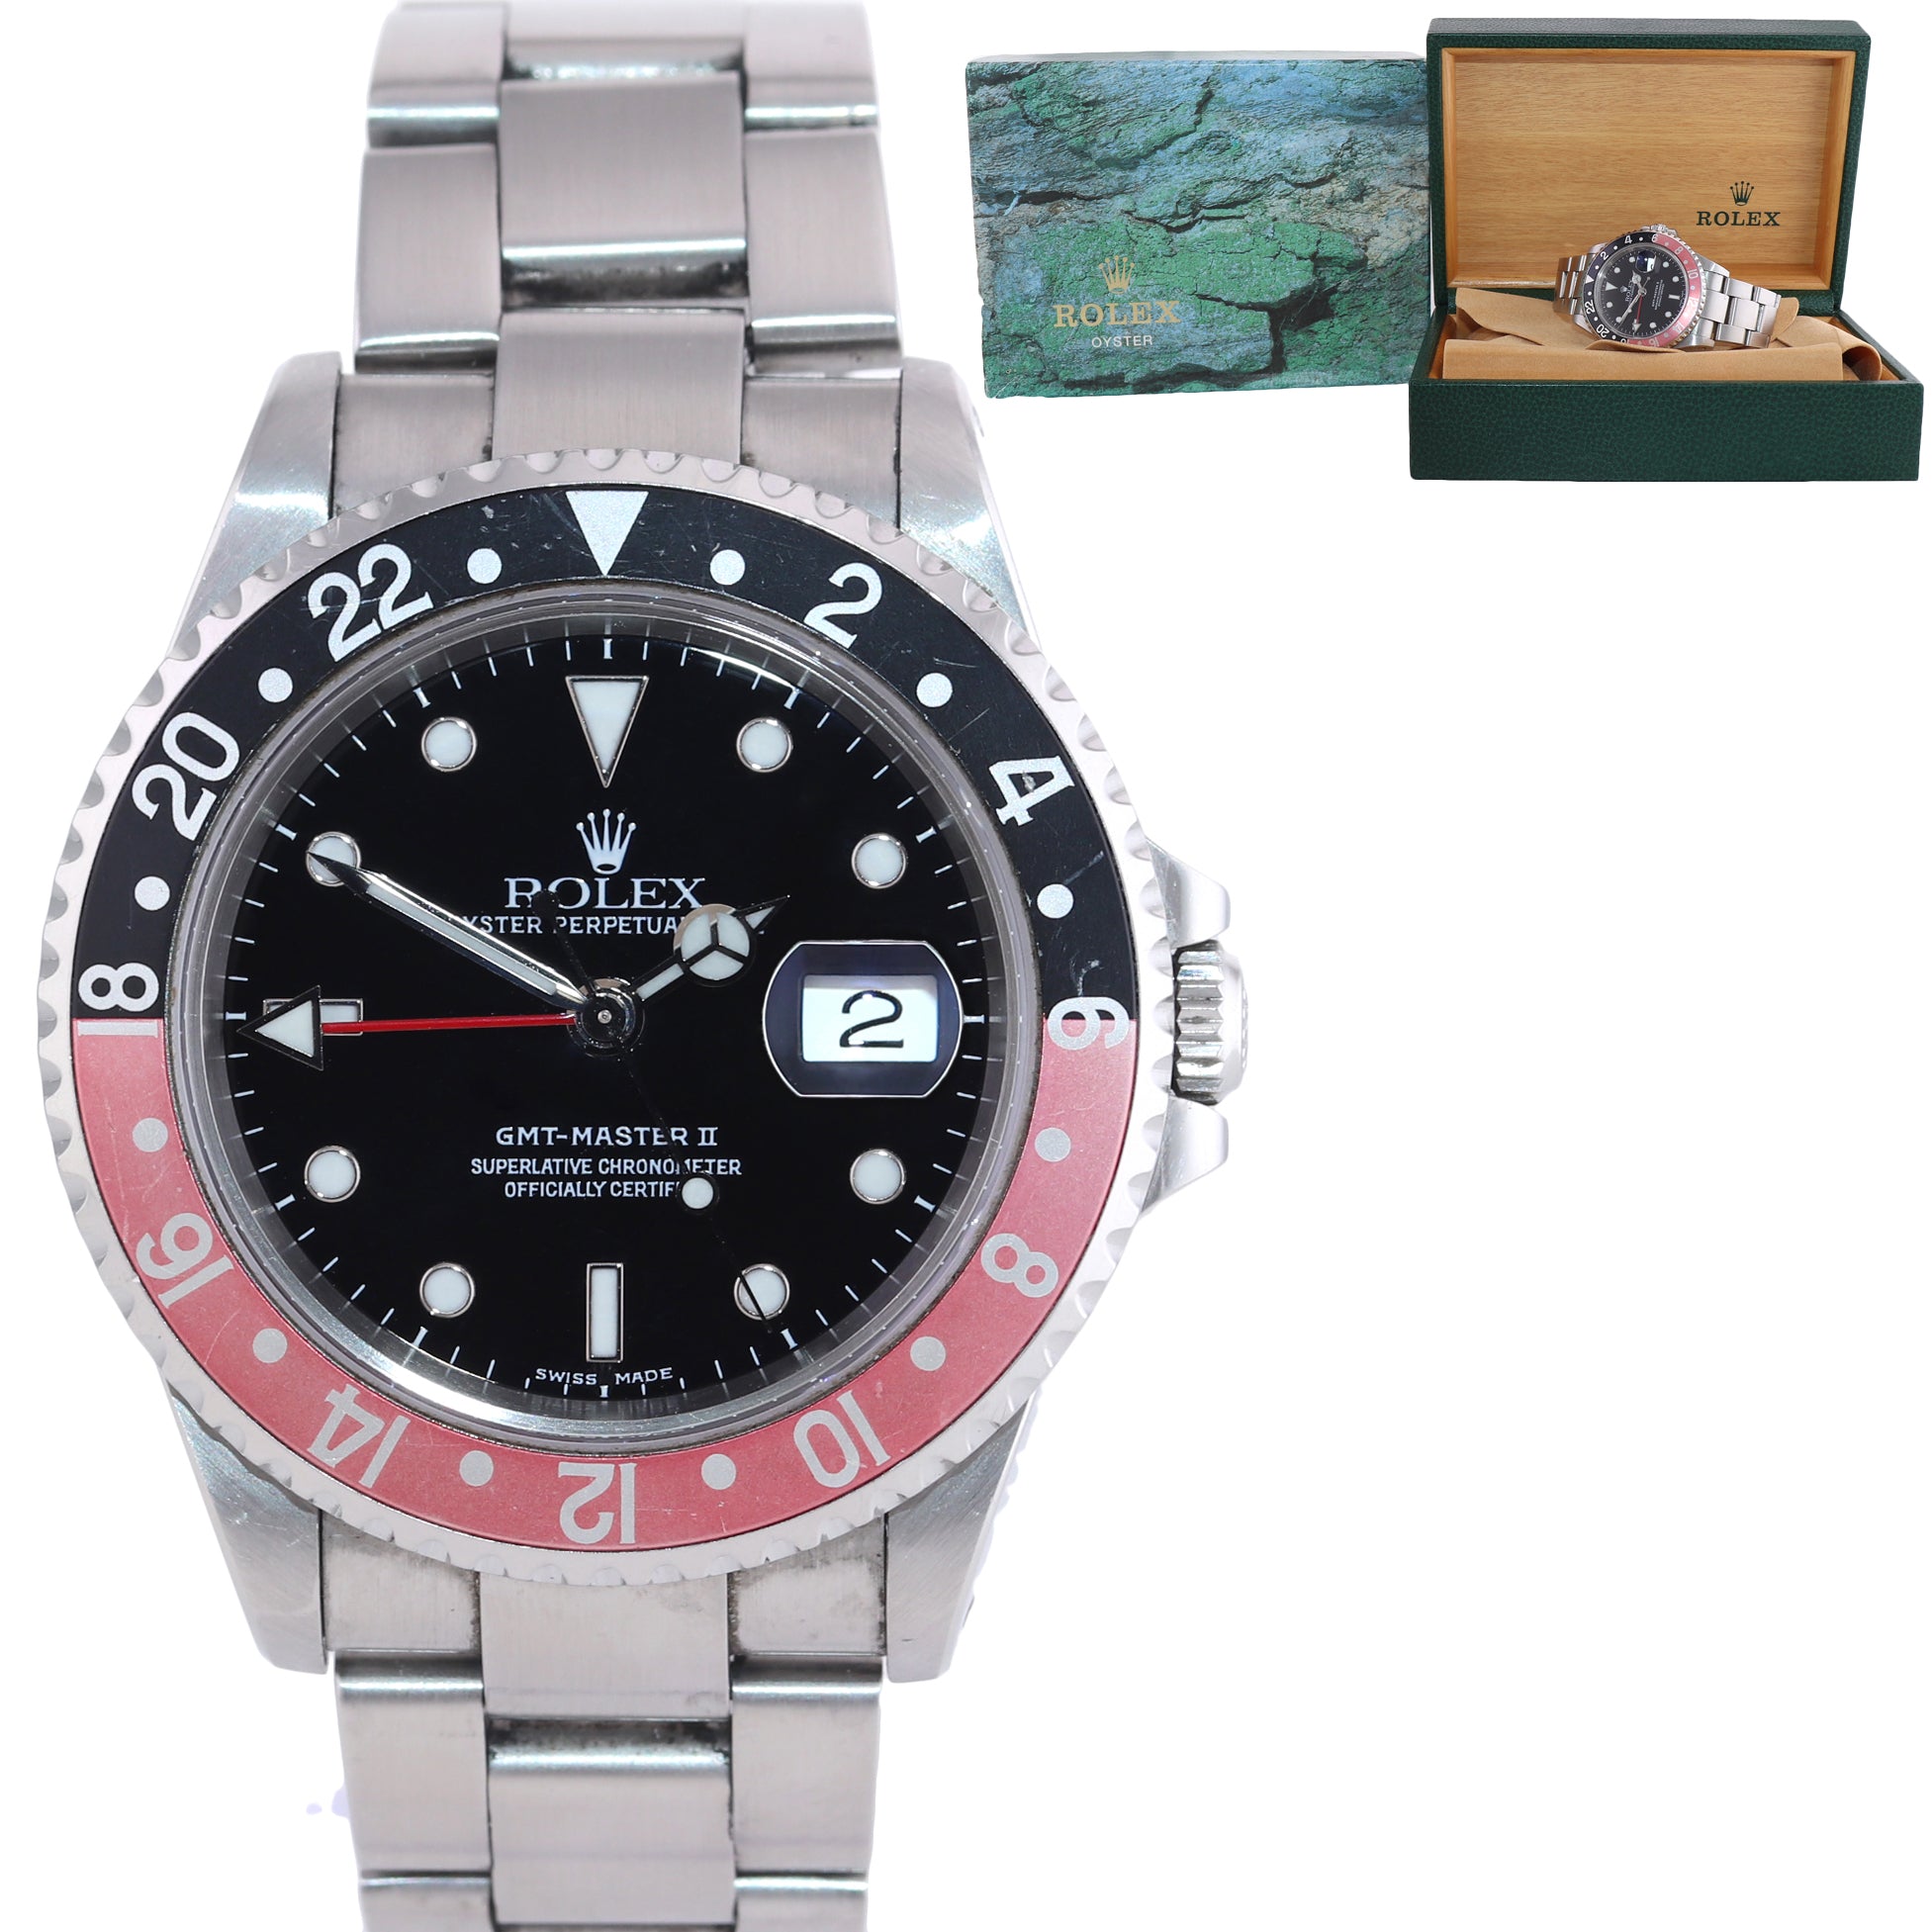 UNPOLISHED Barn Find 2001 Rolex GMT-Master II Coke Steel Red 16710 Watch SEL Box